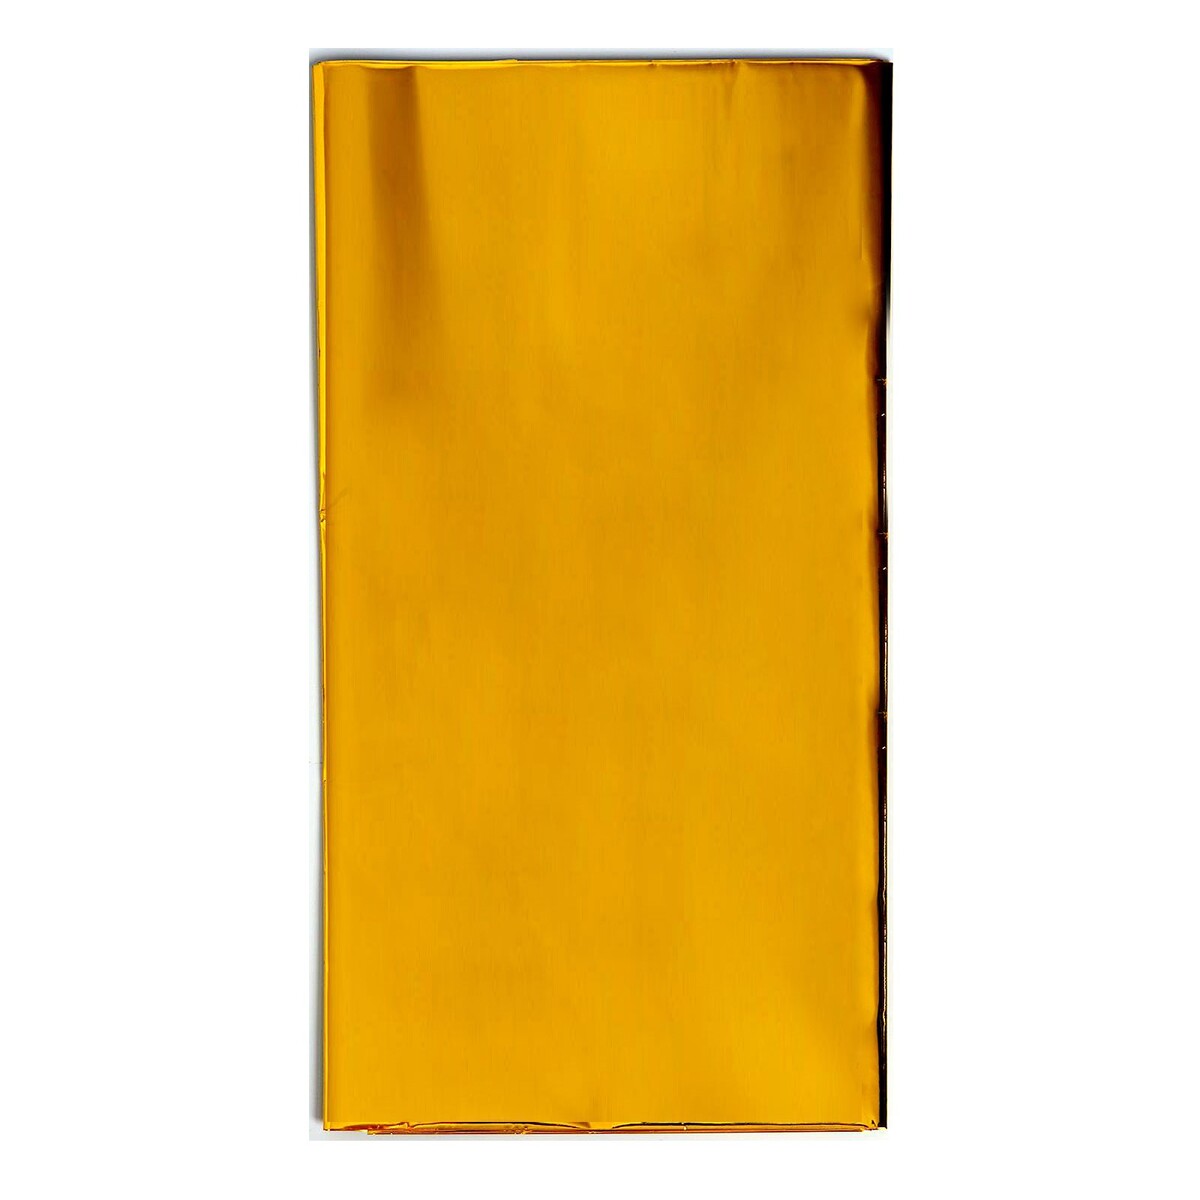 фото Скатерть блестящая, 137 × 183 см, цвет золотой страна карнавалия